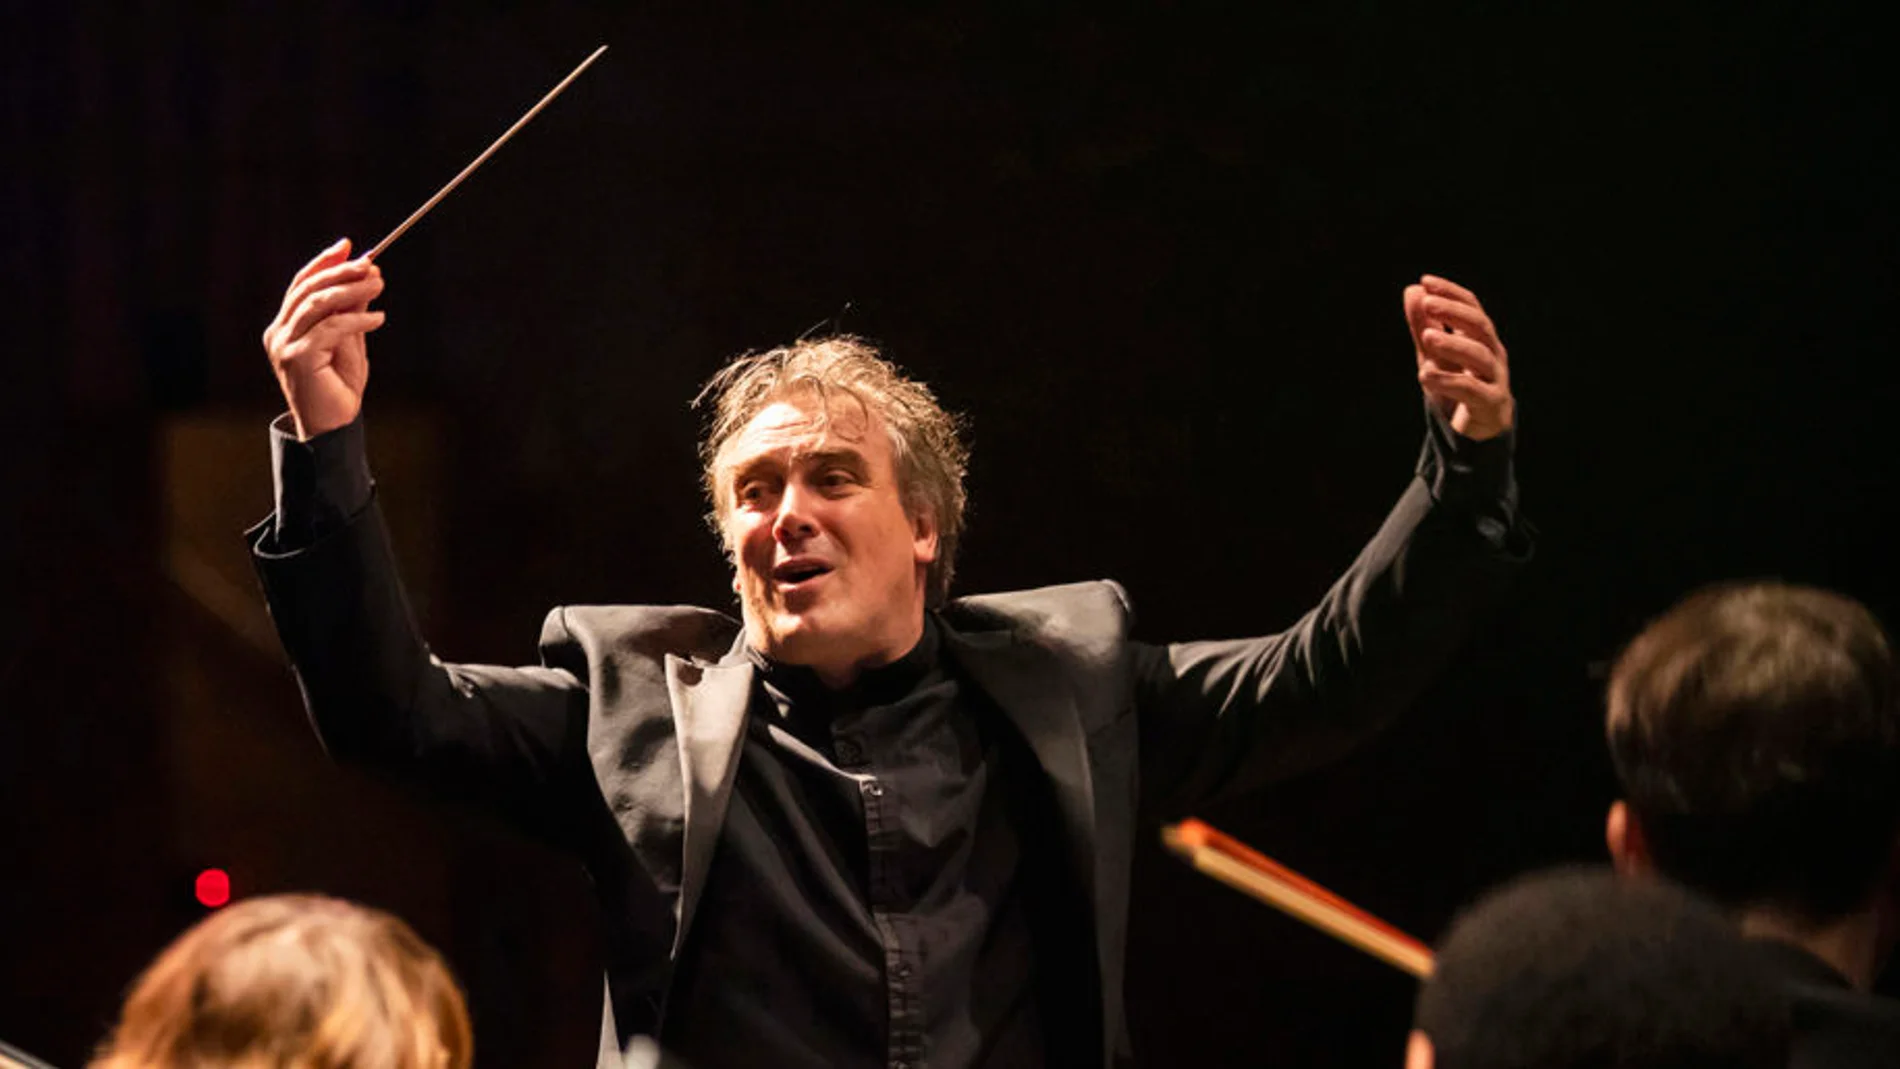 Jaime Martín es, además, director artístico y titular de la Orquesta Sinfónica de Gävle desde 2013